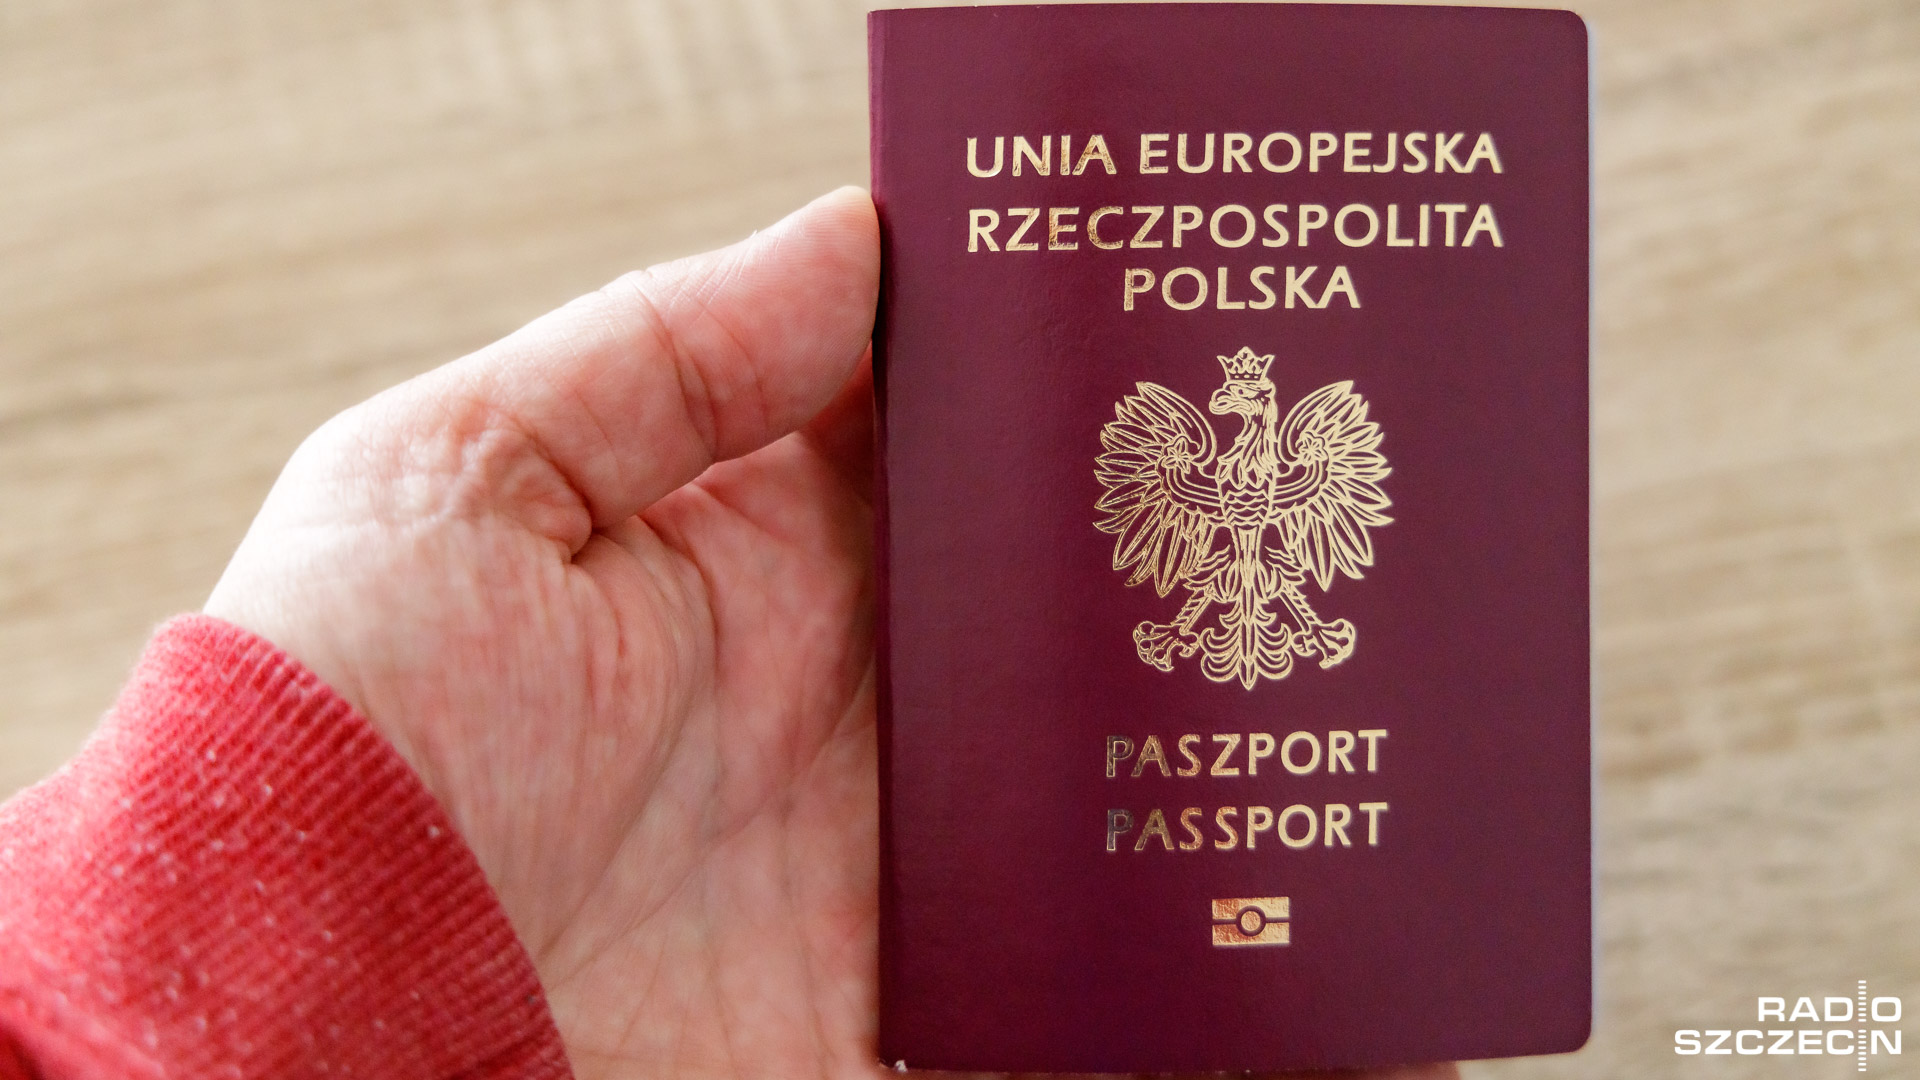 W mieście otwarty zostanie punkt paszportowy - poinformował o tym w mediach społecznościowych wiceminister spraw wewnętrznych i administracji Paweł Szefernaker.